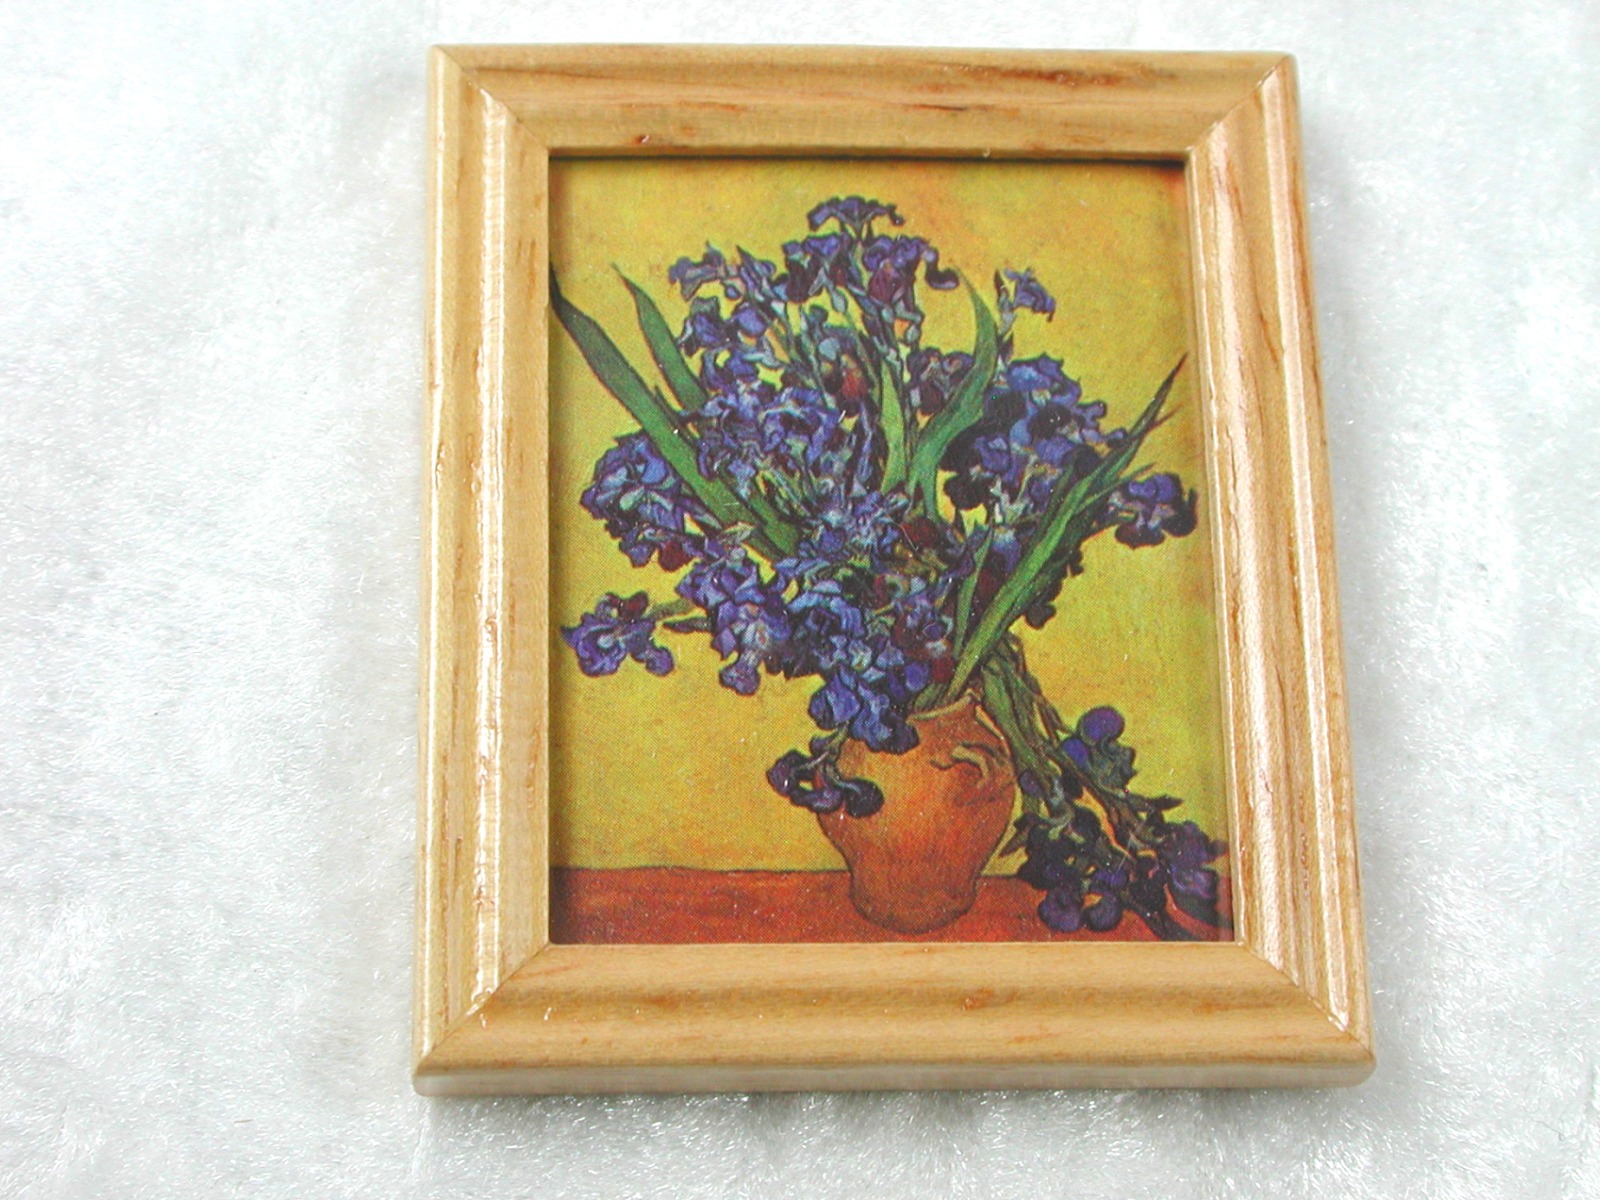 Gemäldekopie Schwertlilien im Holzrahmen 4,5 x 5,5 x 0,5 cm